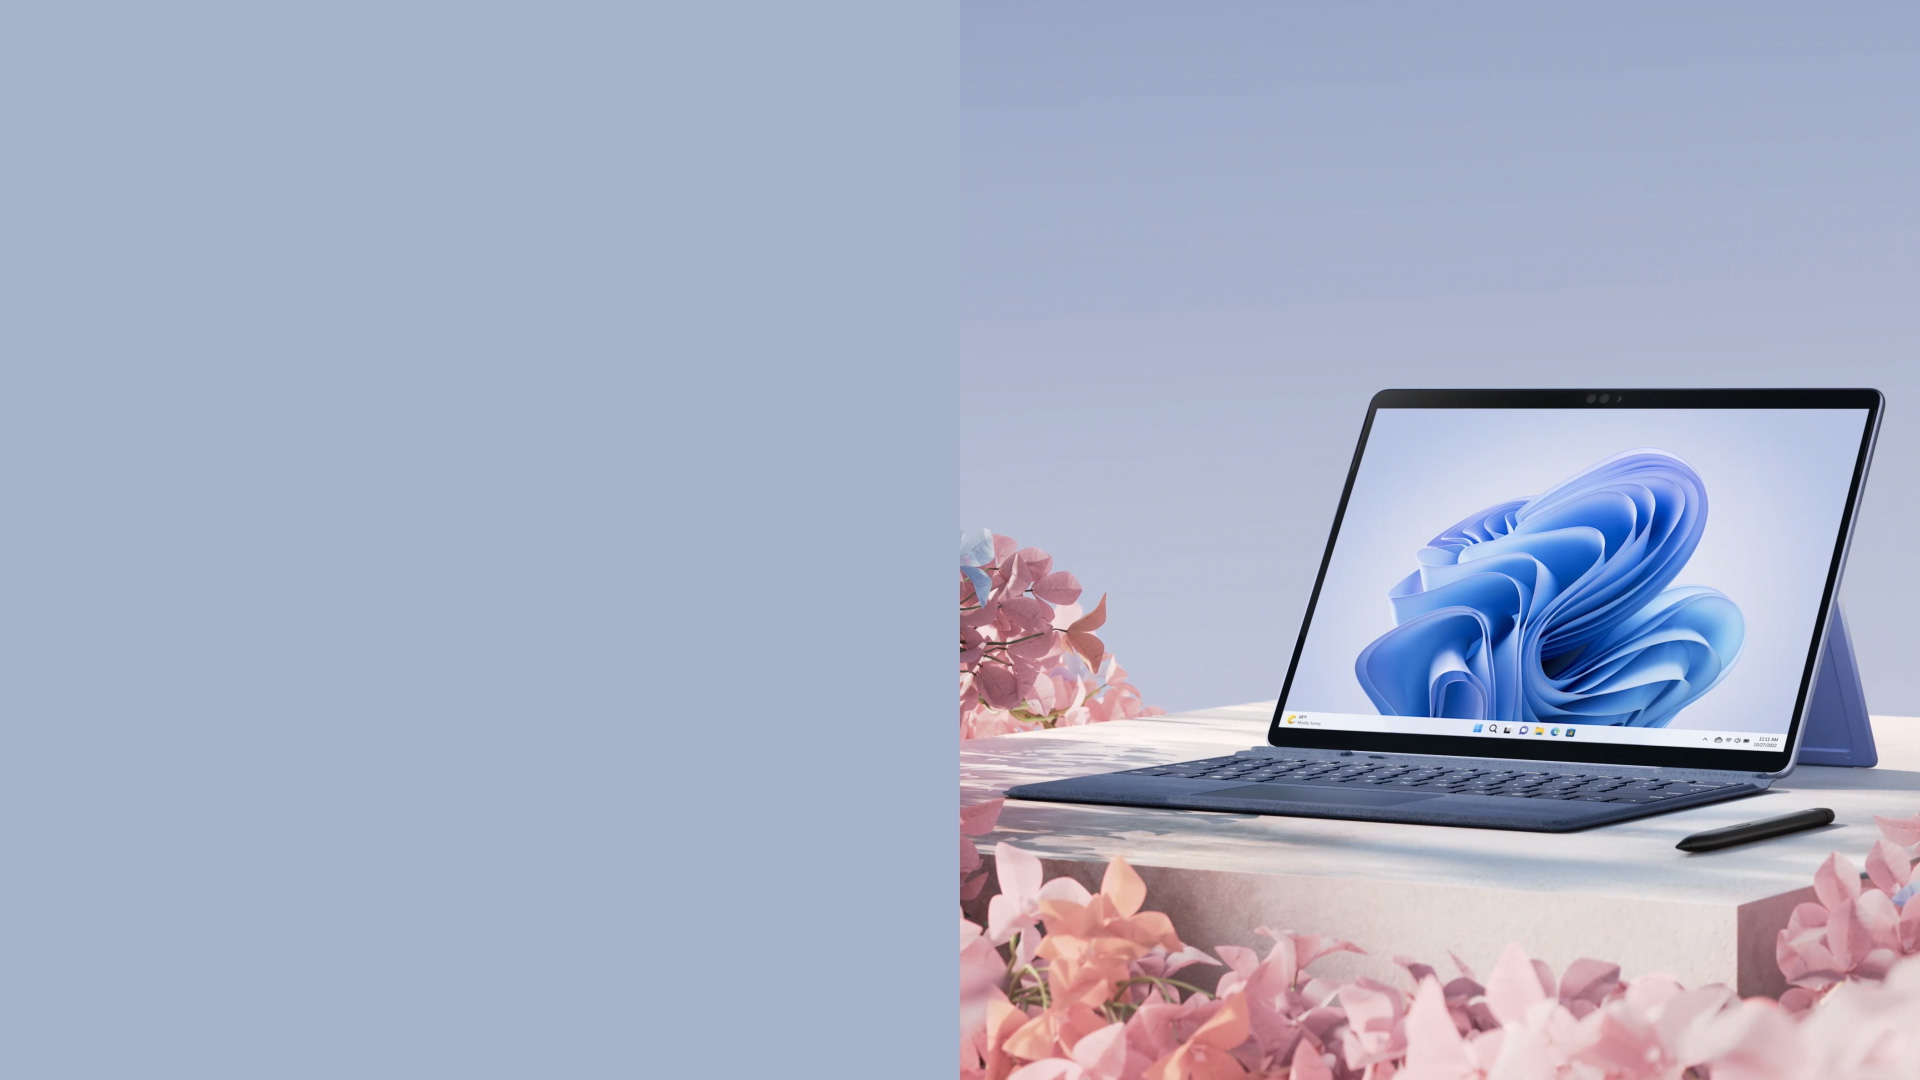 畫面顯示寶石藍 Surface Pro 9 斜靠著支架，並且 Surface 超薄手寫筆 2 由淡粉紅色的花朵所包圍。